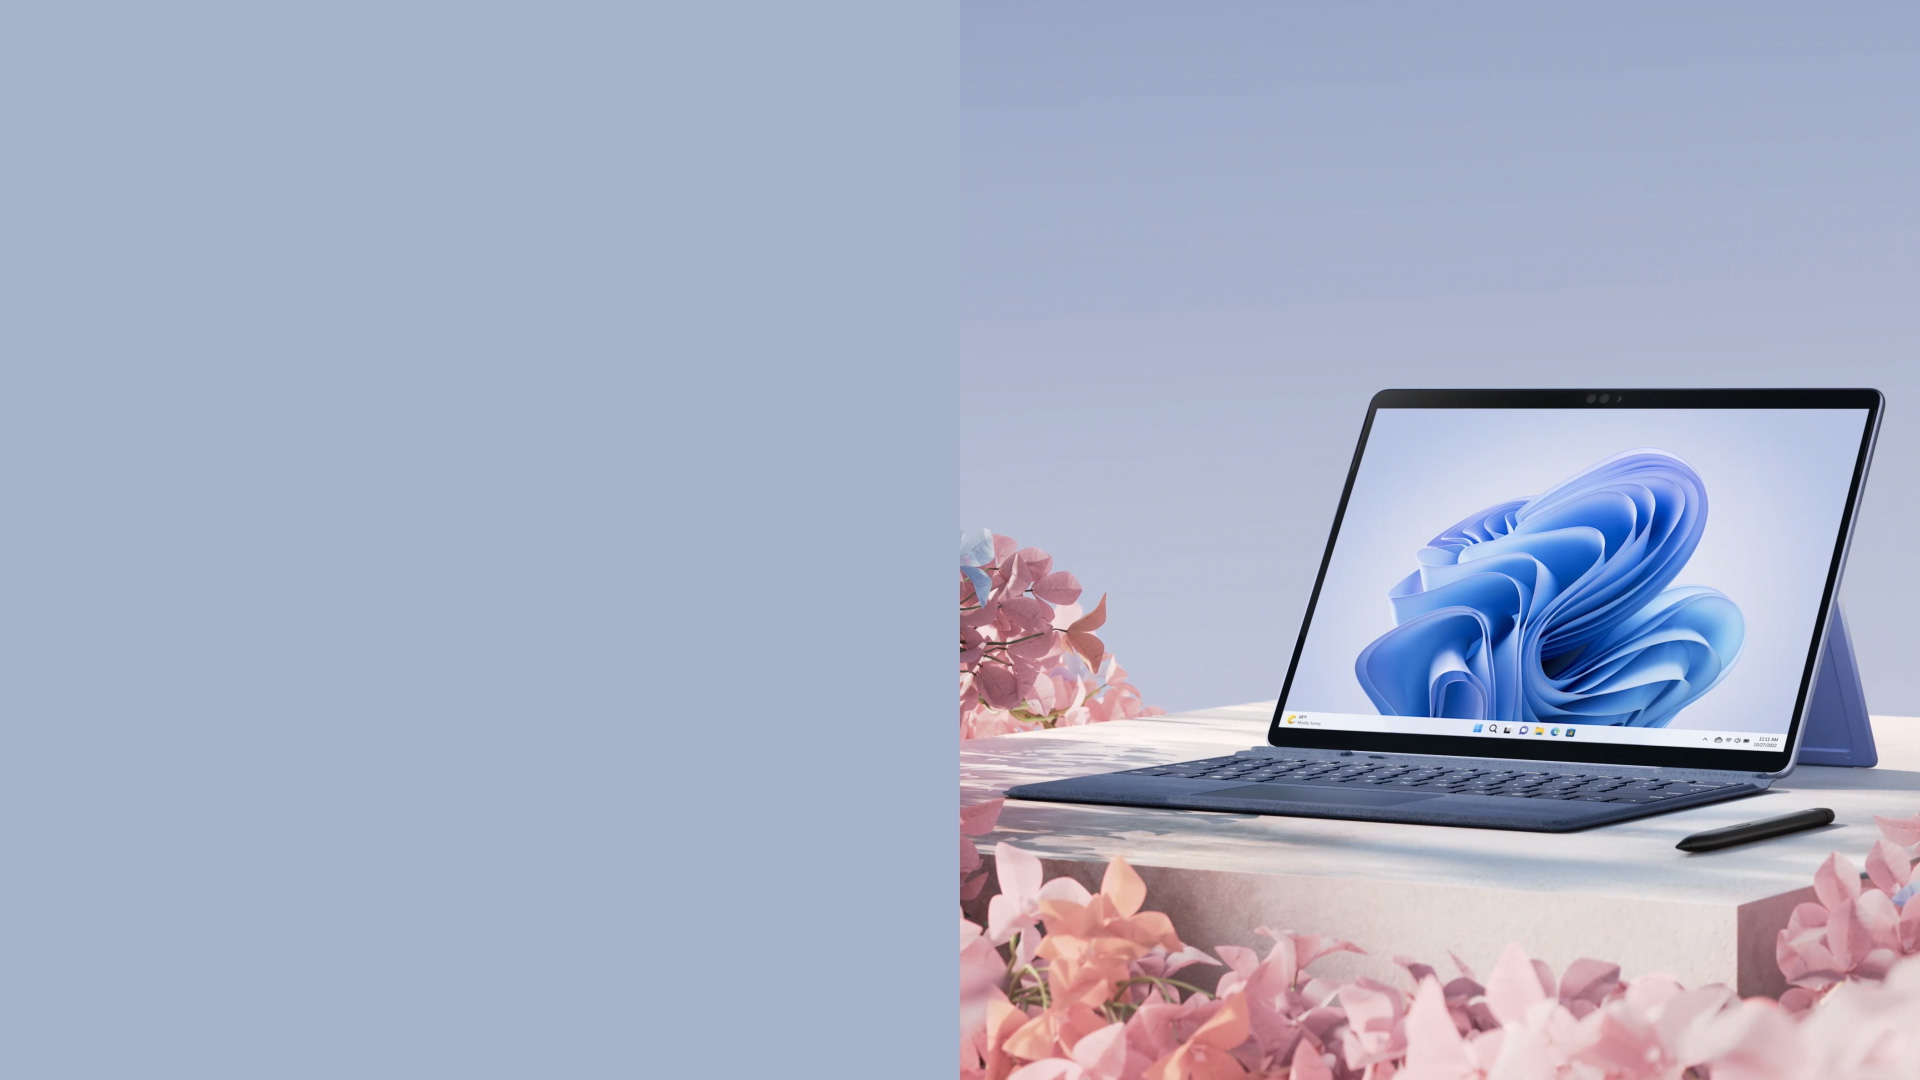 畫面顯示寶石藍 Surface Pro 9 斜靠著支架，並且 Surface 超薄手寫筆 2 由淡粉紅色的花朵所包圍。